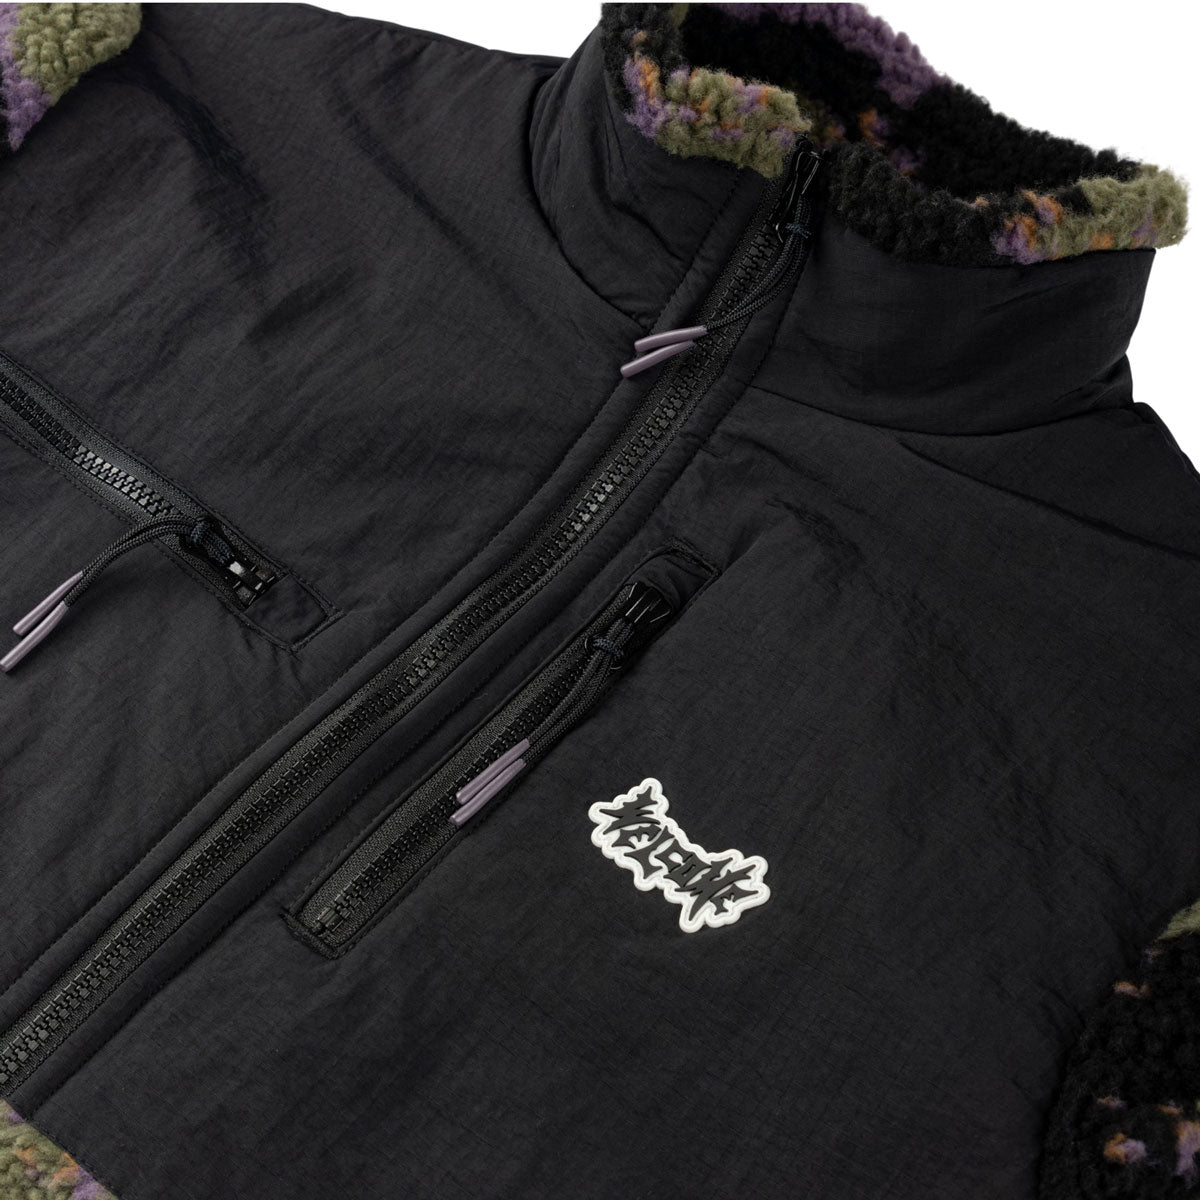 Welcome Cloak Full-zip Sherpa Fleece Sweatshirt - Woods image 4